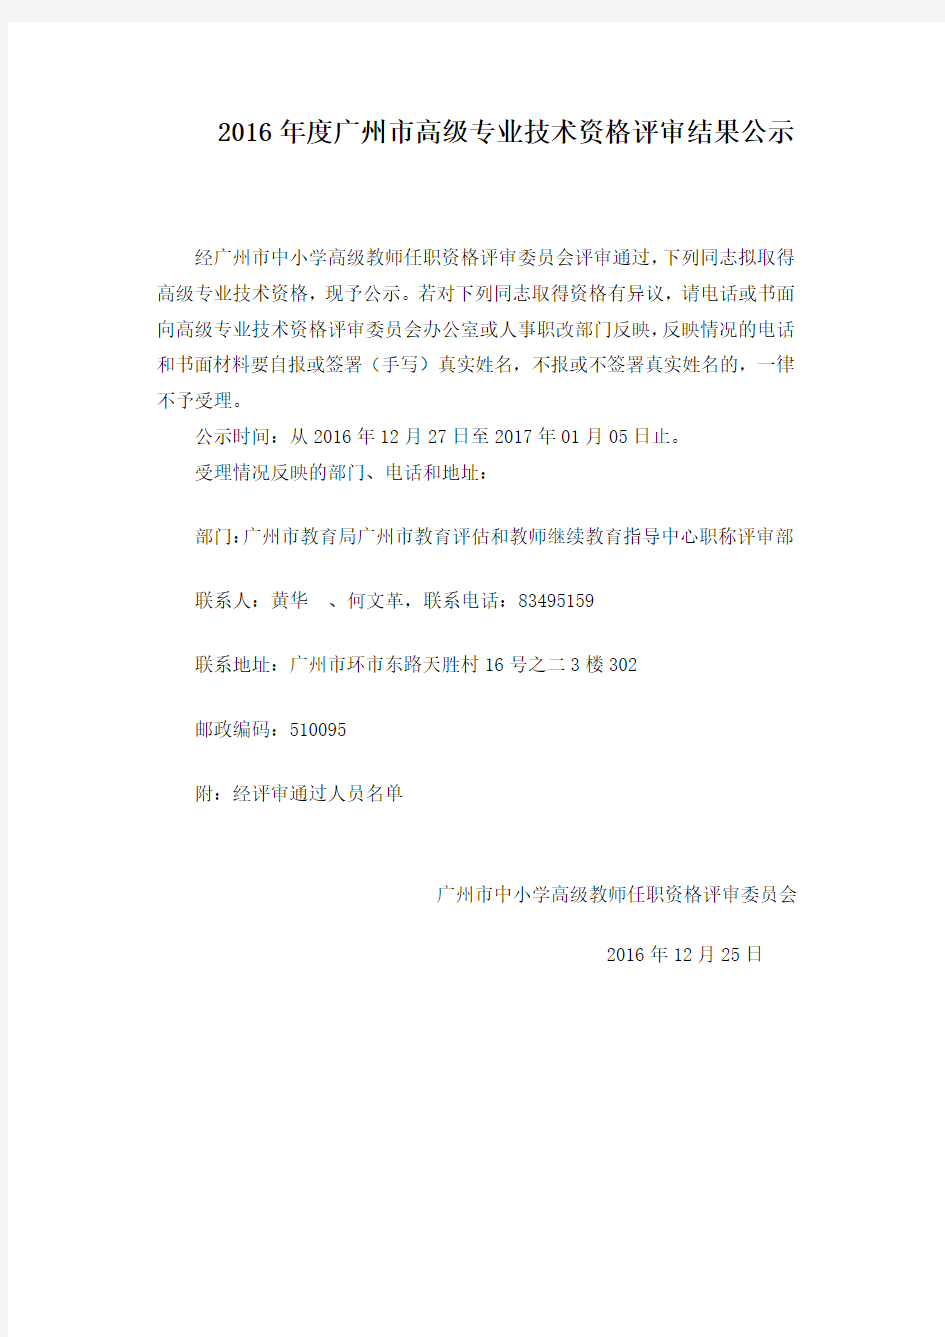 2016广州高级专业技术资格评审结果公示